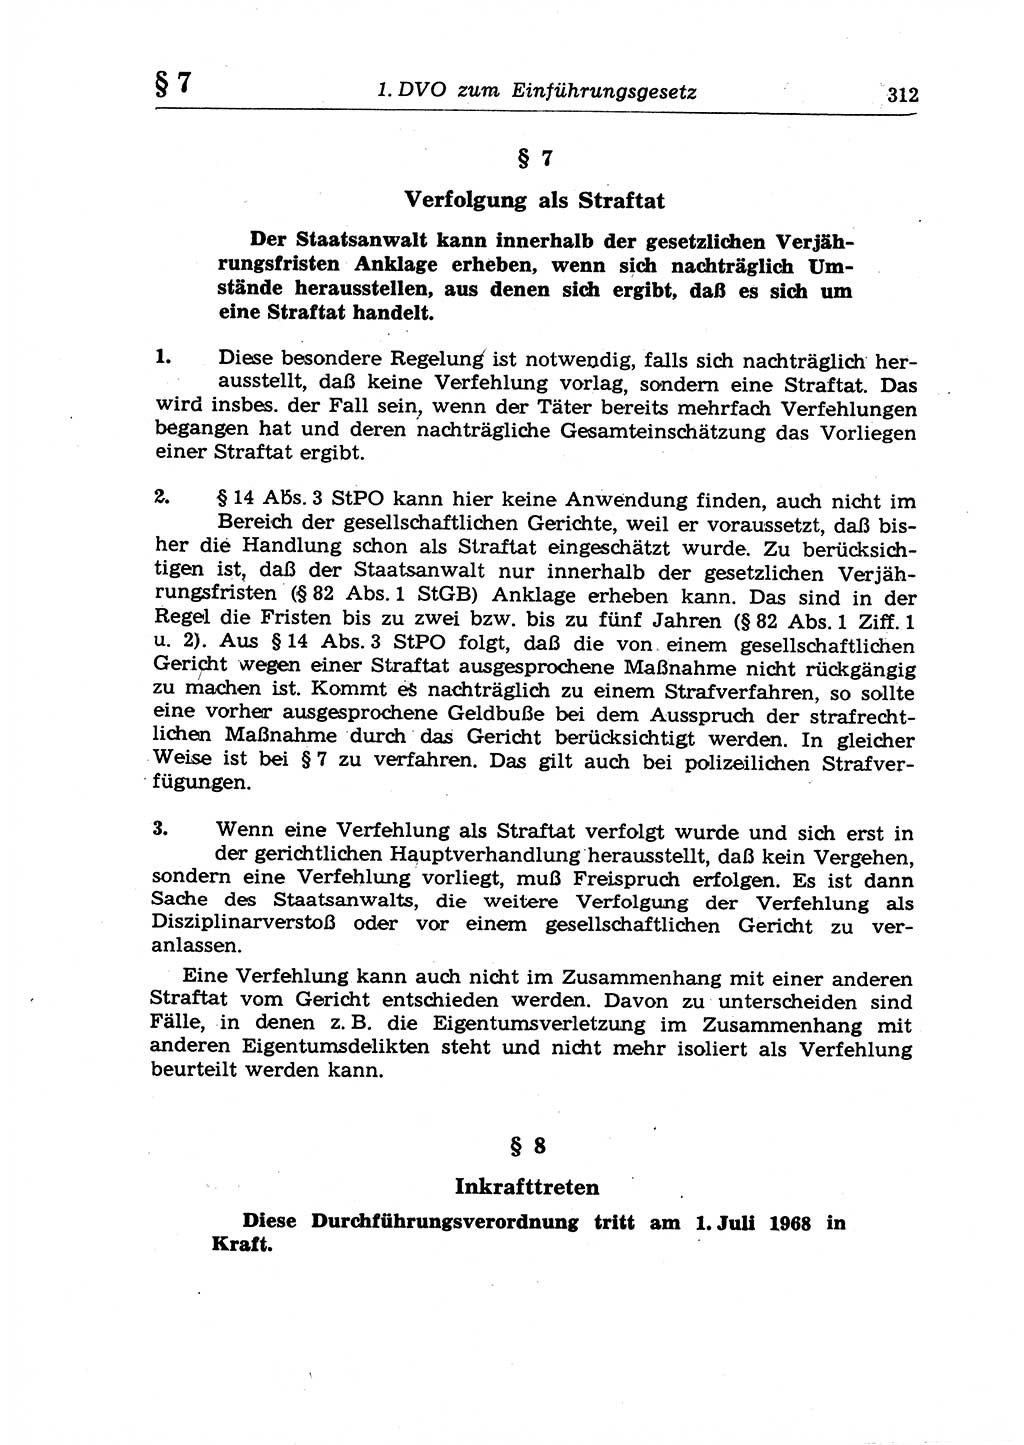 Strafrecht der Deutschen Demokratischen Republik (DDR), Lehrkommentar zum Strafgesetzbuch (StGB), Allgemeiner Teil 1970, Seite 312 (Strafr. DDR Lehrkomm. StGB AT 1970, S. 312)